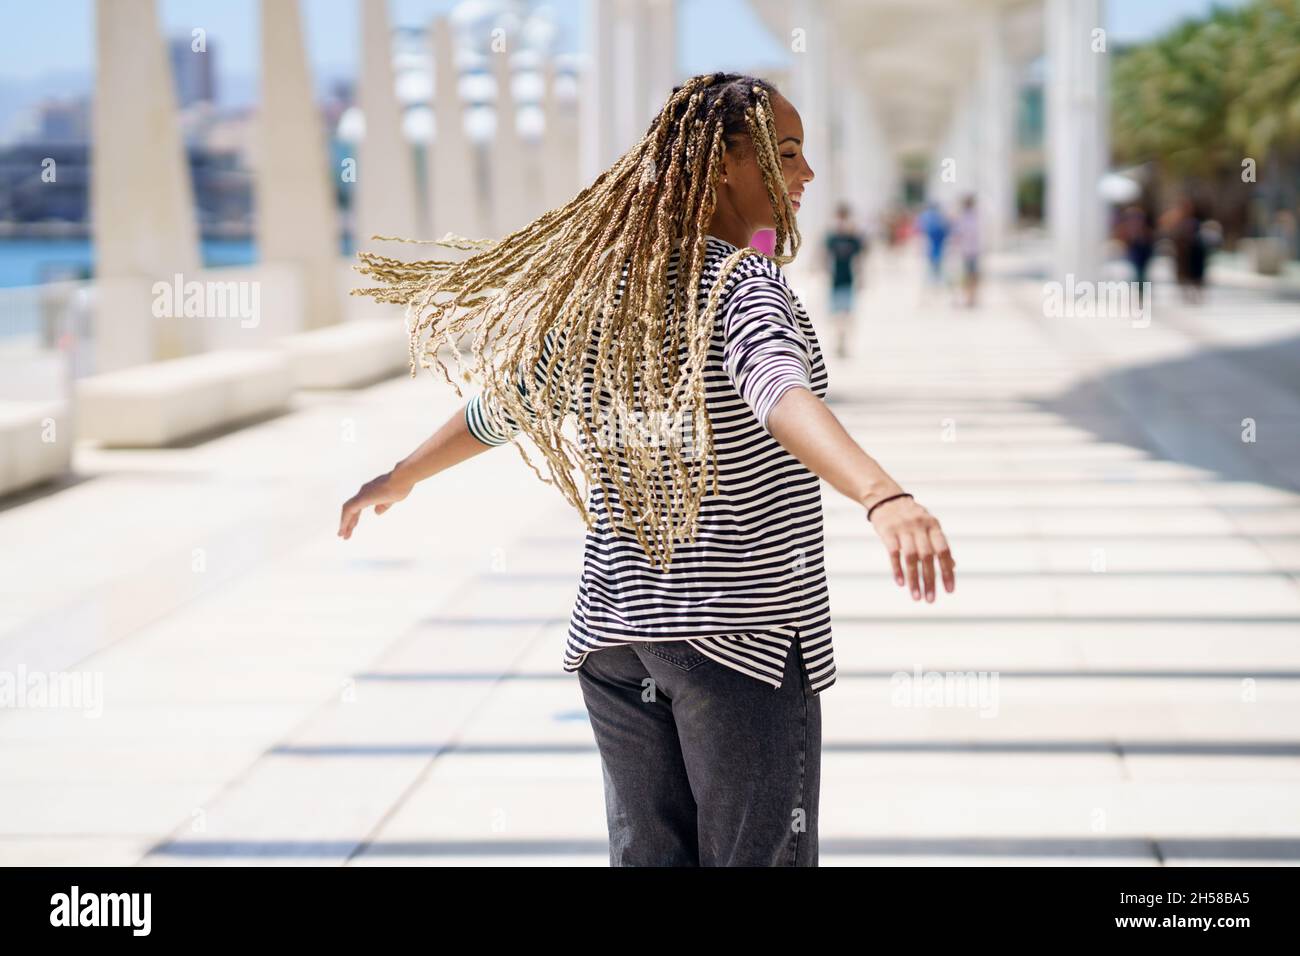 Junge schwarze Frau bewegt ihre farbigen Zöpfe im Wind. Typische afrikanische Frisur. Stockfoto